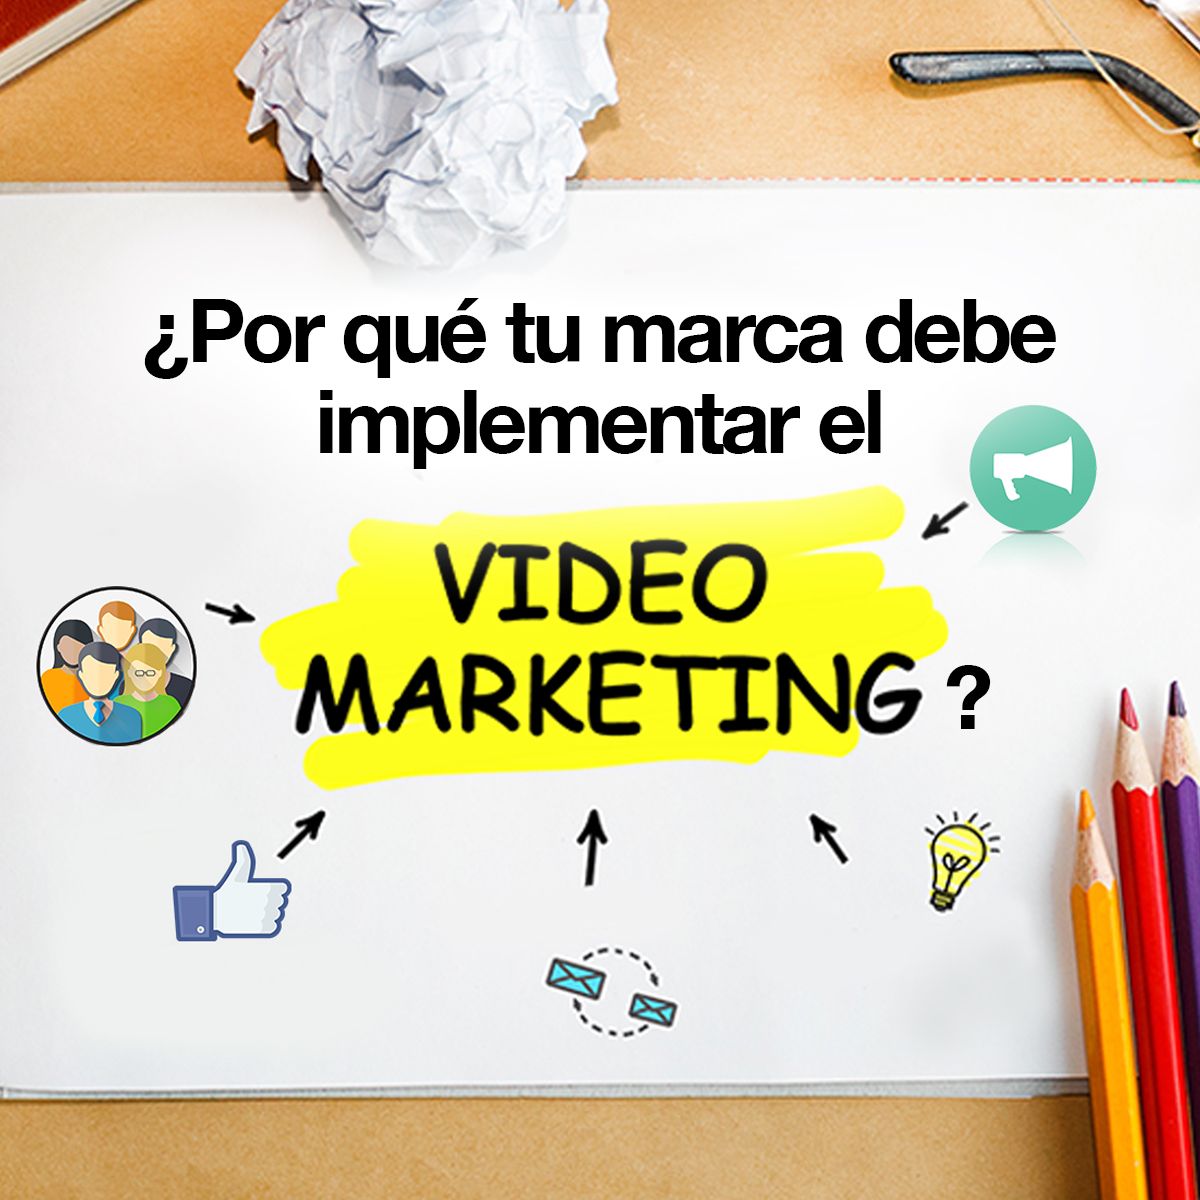 ¿Por qué tu marca debe implementar el video marketing?